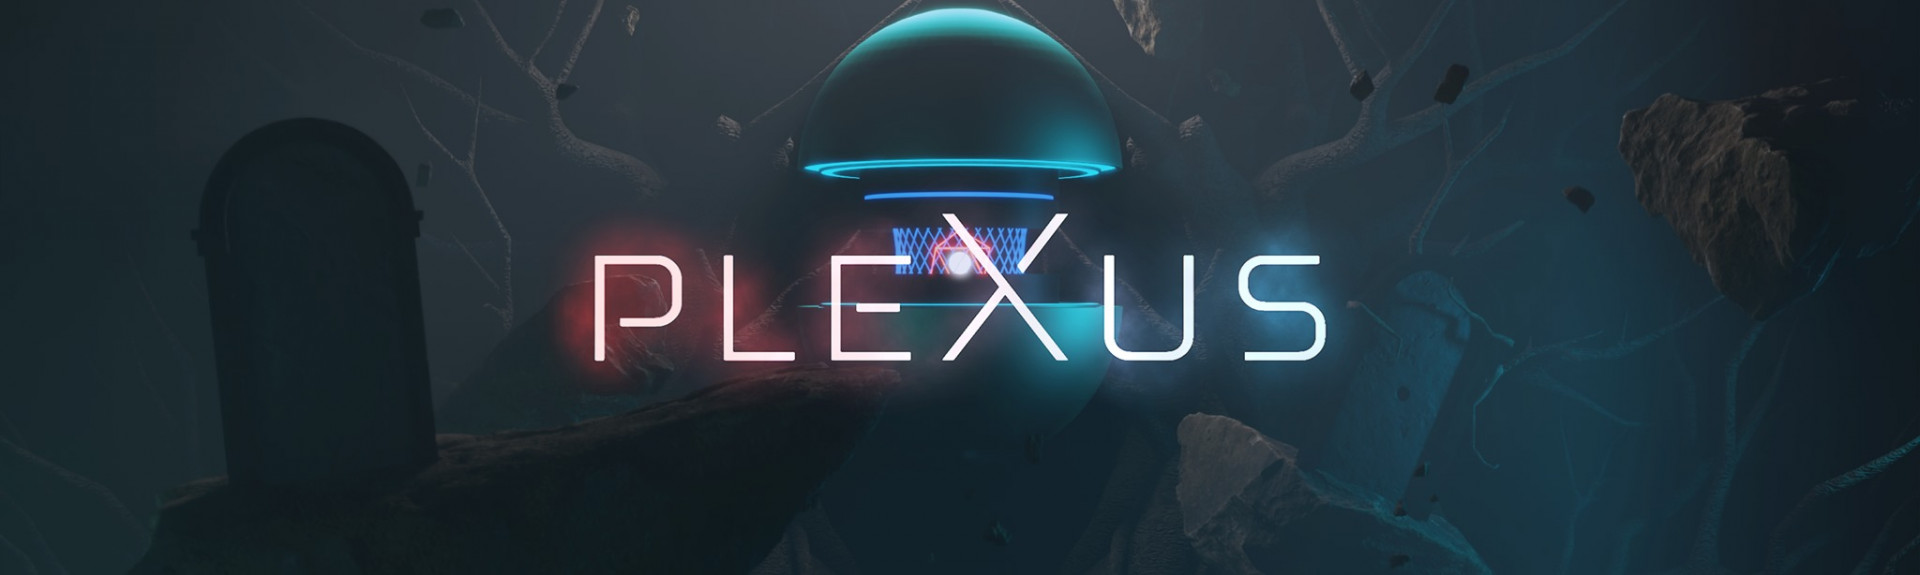 pleXus